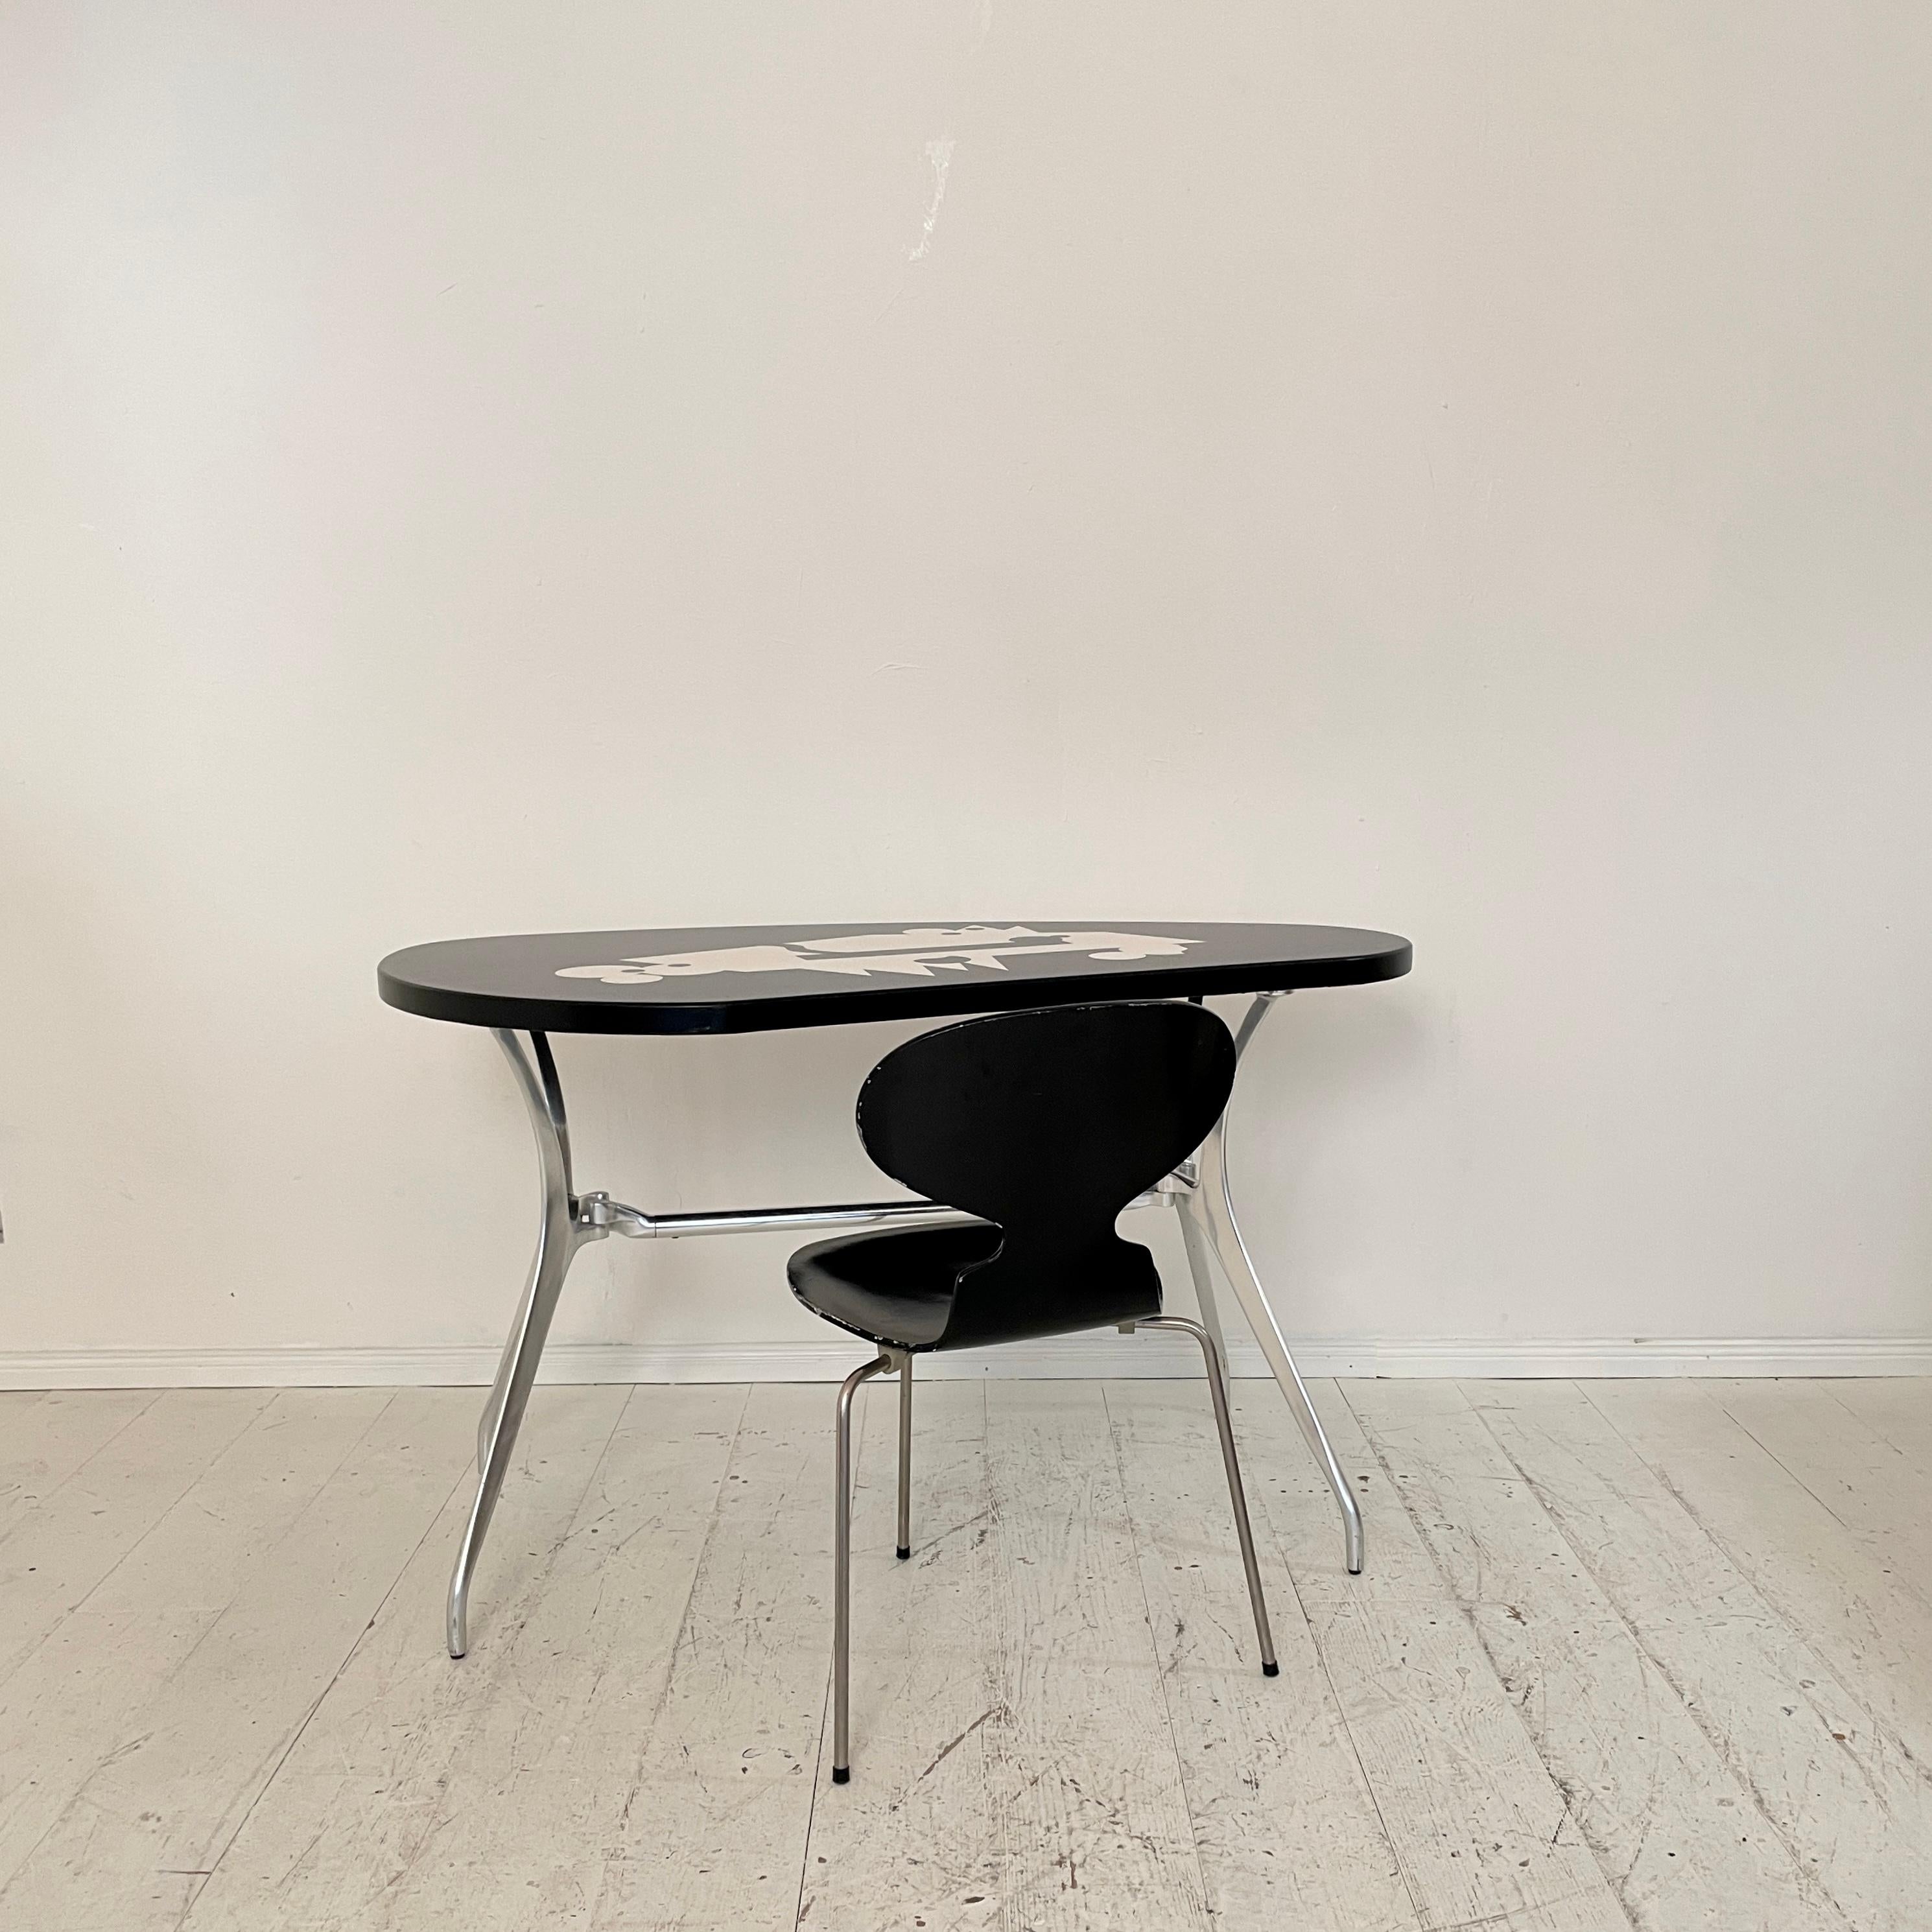 Cette magnifique chaise Fourmi du début du siècle dernier, créée par Arne Jacobsen pour Fritz Hansen, a été fabriquée vers 1957.
La chaise est composée d'une base en acier et d'une assise en contreplaqué laqué noir.
Il est en excellent état